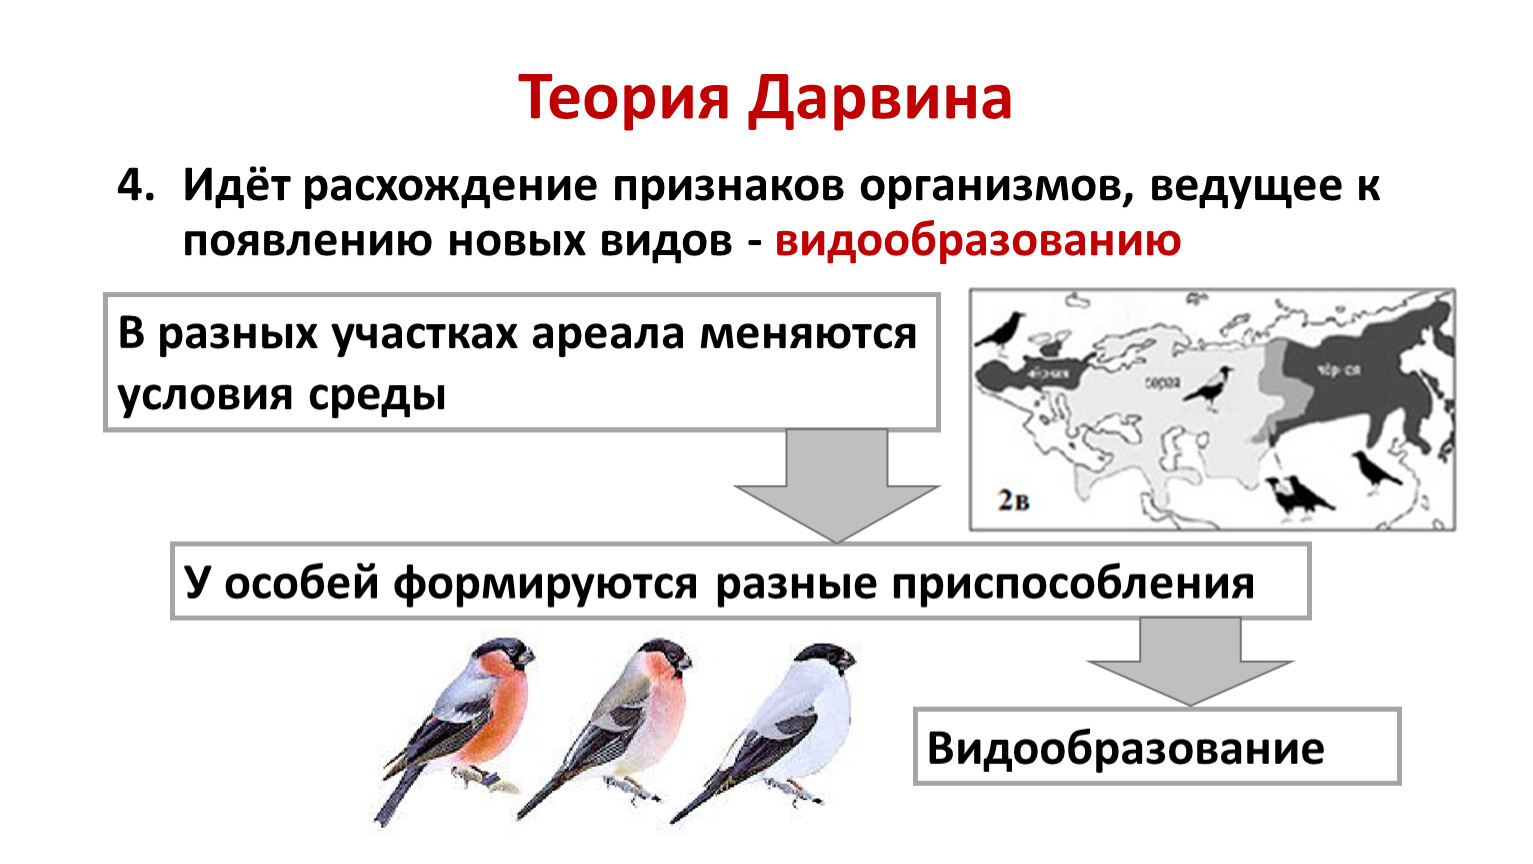 Теория Дарвина схема. Учение Дарвина об эволюции. Видообразование по Дарвину. Теория эволюции Дарвина схема.